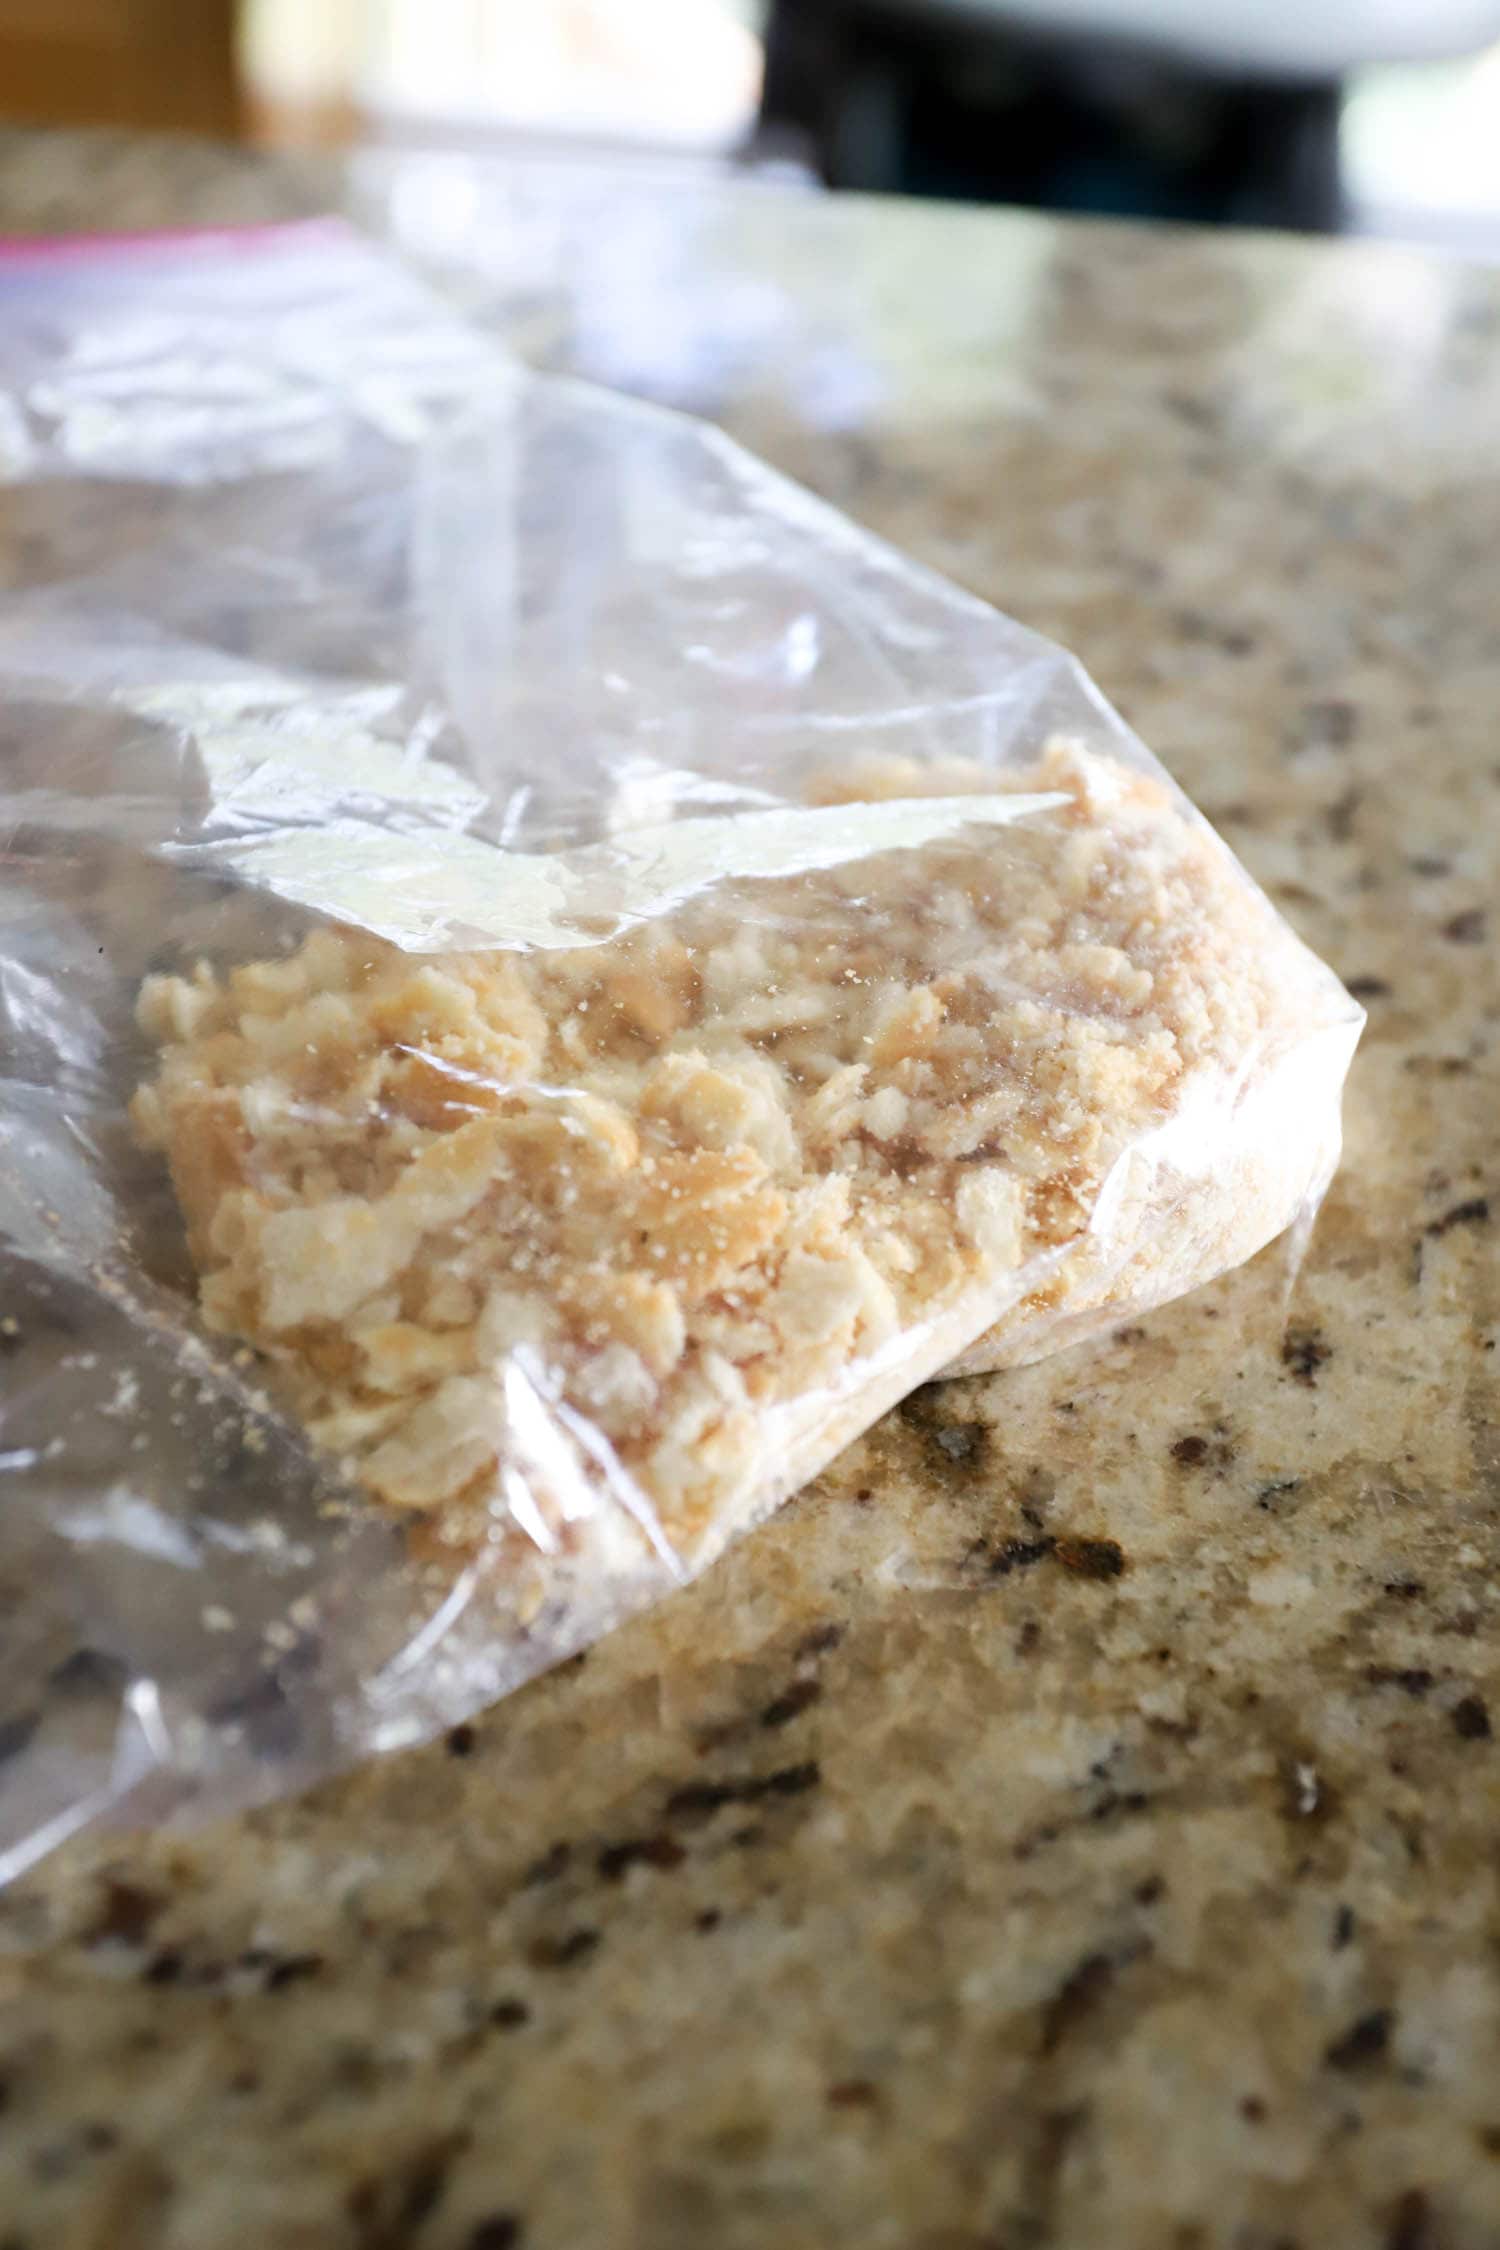 ritz crackers crushed in a ziploc bag.